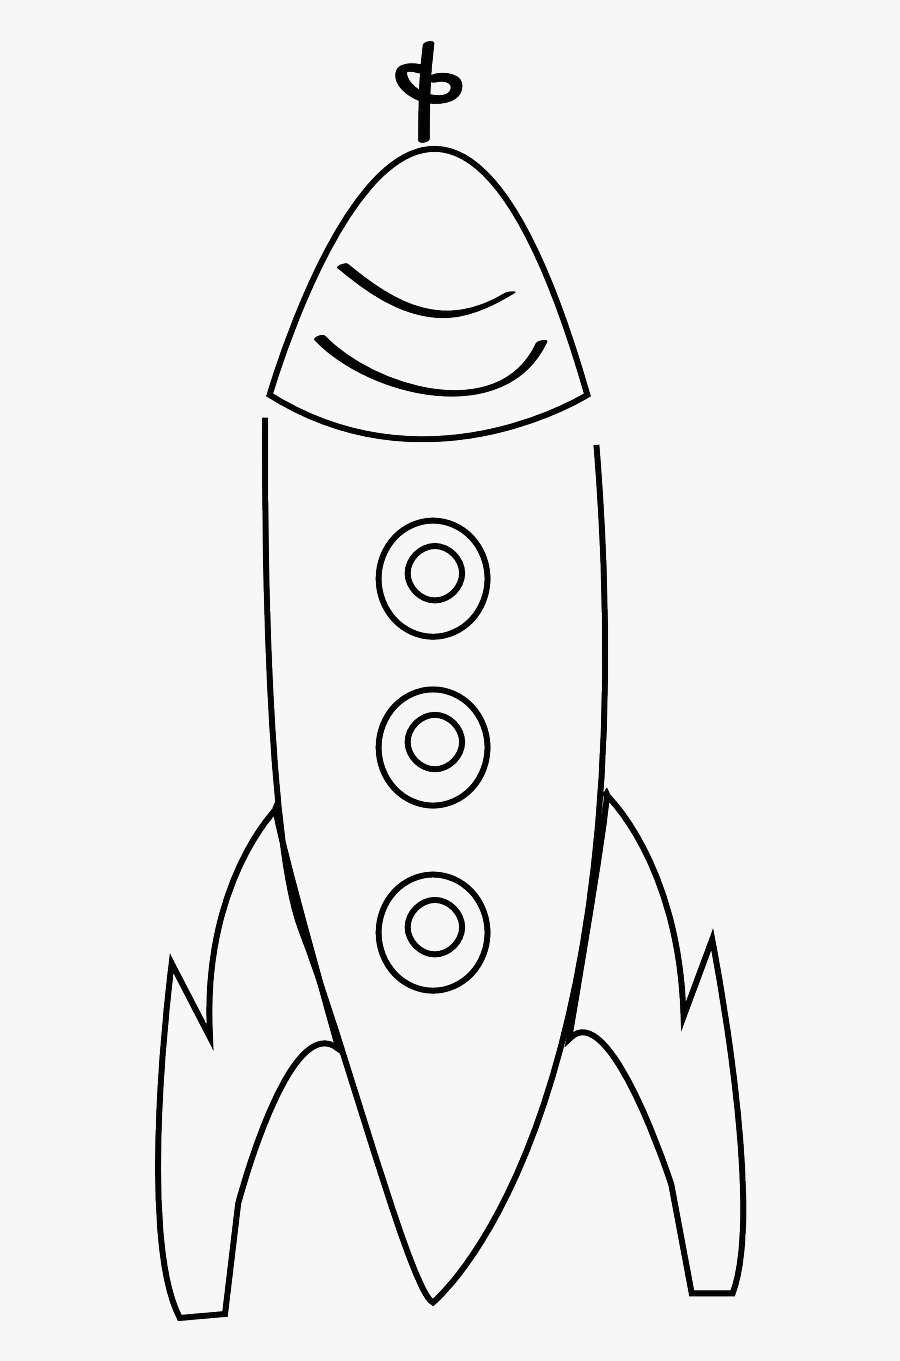 Rocket - Outline Image Of Rocket, Transparent Clipart